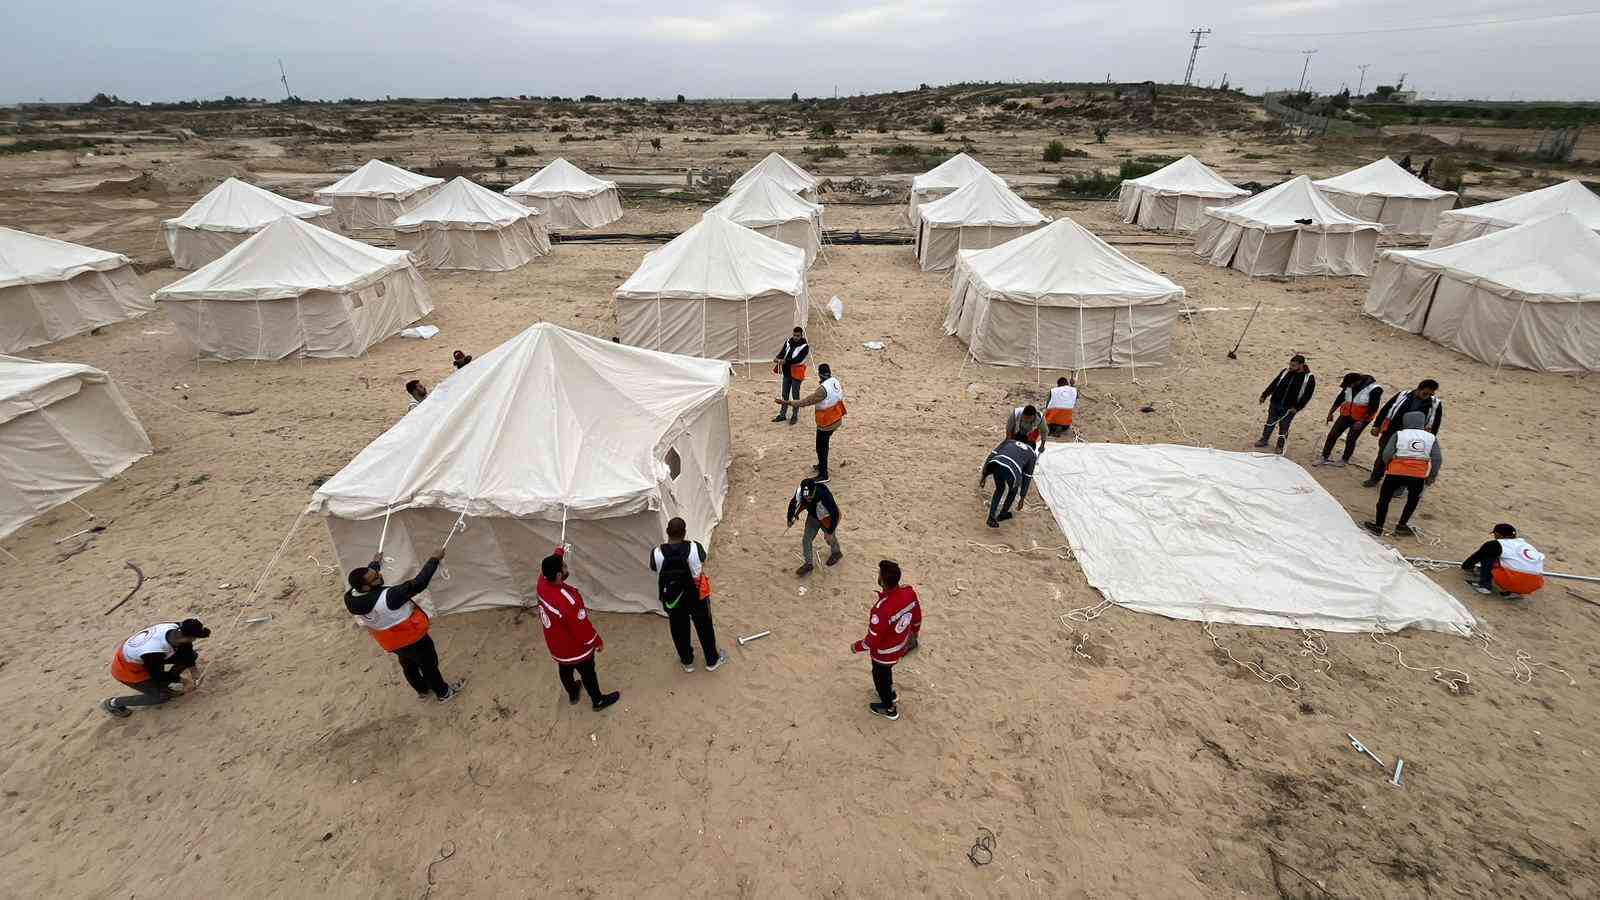 واشنطن بوست: خطة إسرائيلية لإنشاء مخيمات في هذه المنطقة